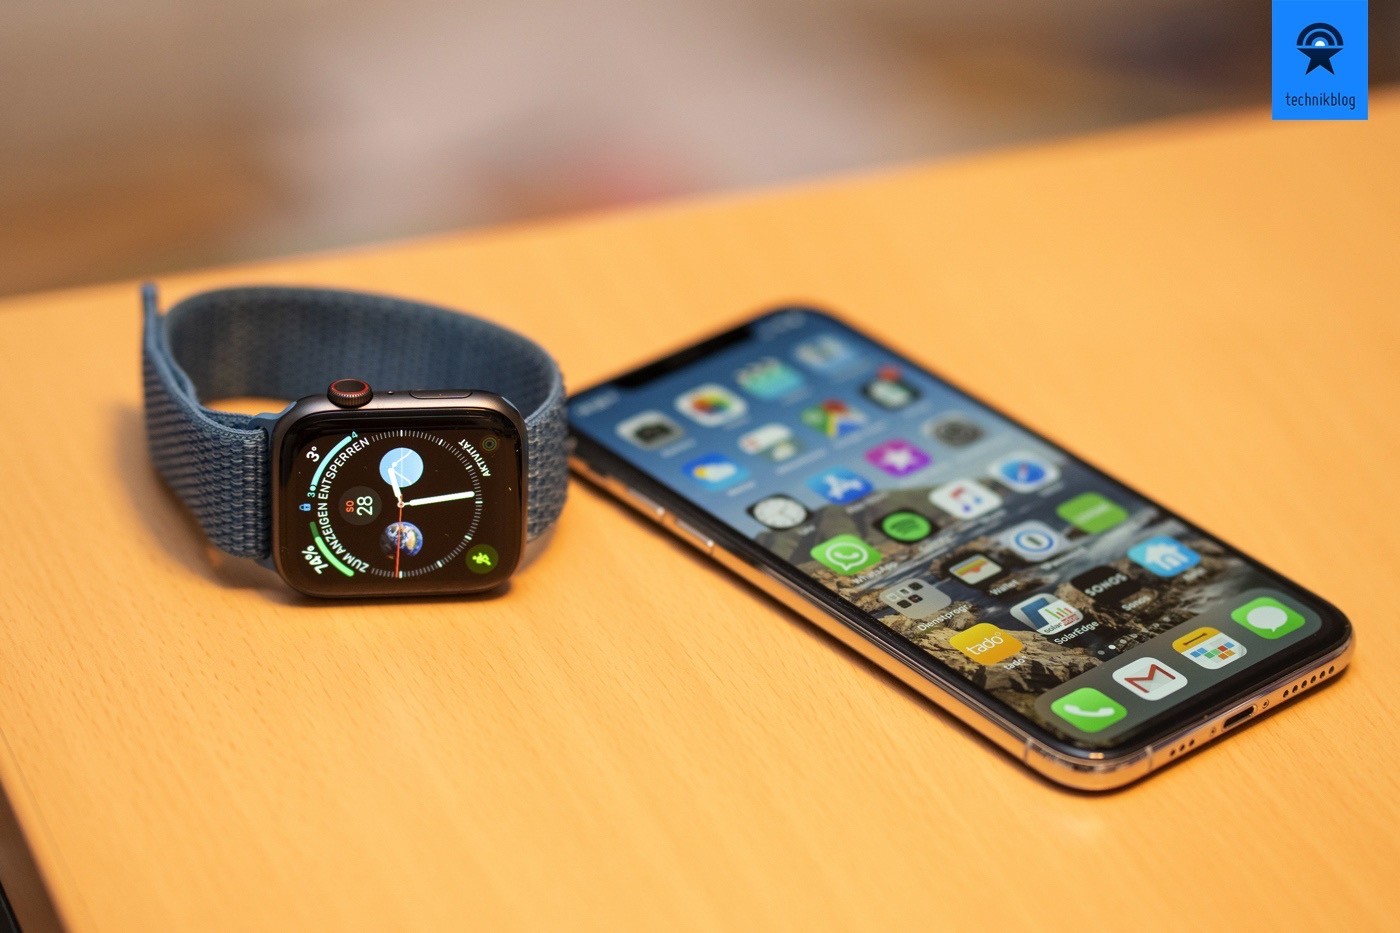 Meine beiden täglichen Begleiter: Apple Watch Series 4 und iPhone Xs